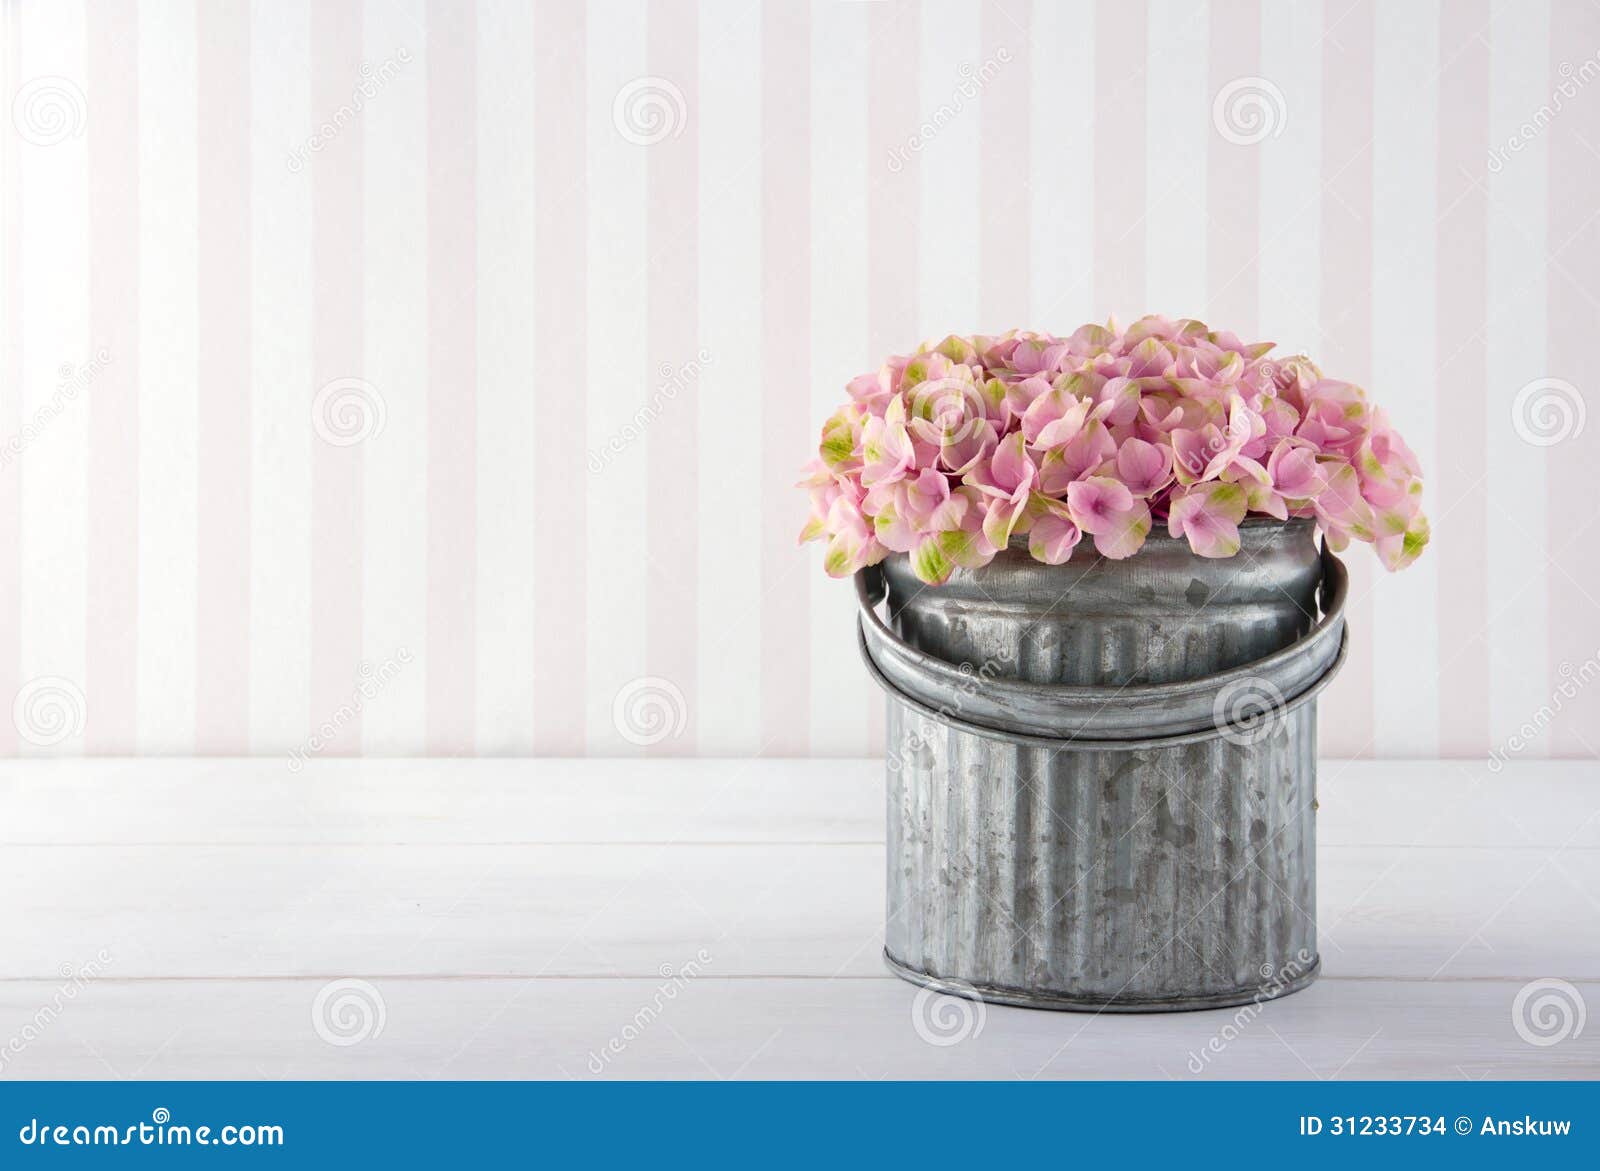 hydrangea flowers in a metal bucket